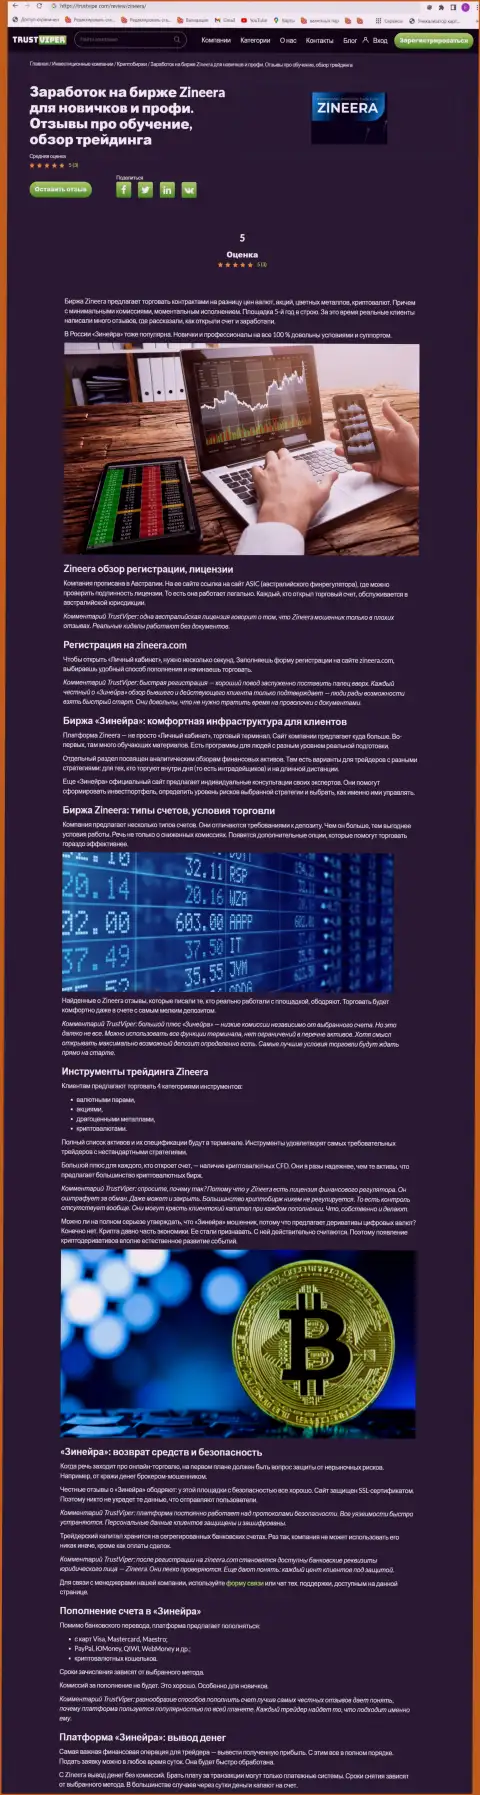 Обзор условий спекулирования крипто брокерской компании Зиннейра на сайте Траствайпер Ком